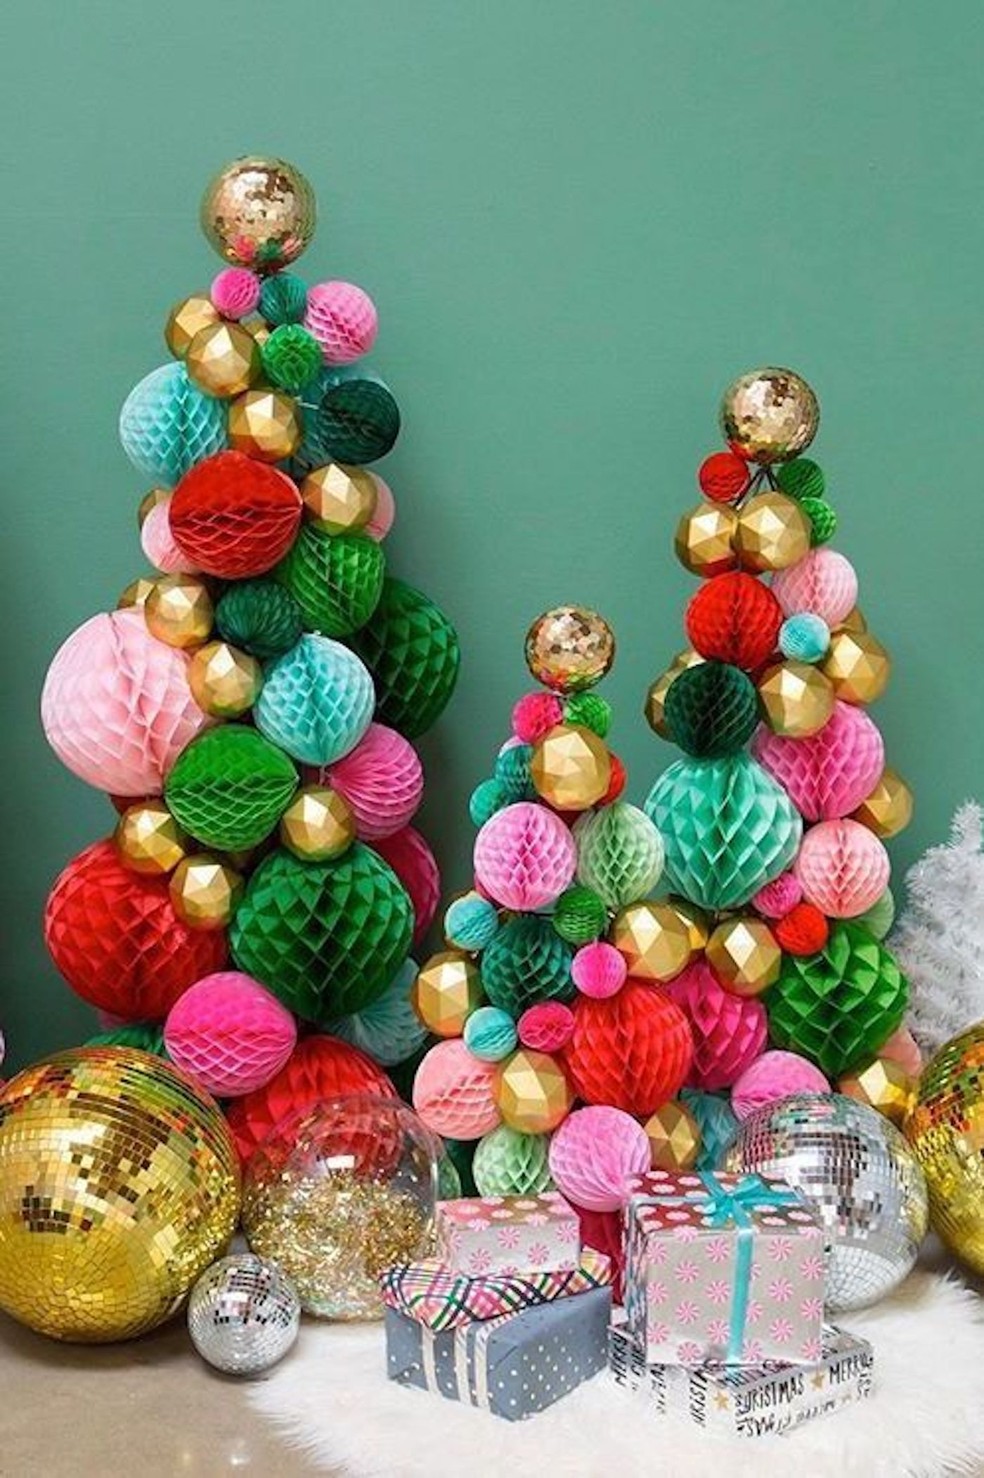 Aa bolas de papel que servem de decoração de festas podem formar lindas árvores — Foto: Pinterest / Reprodução